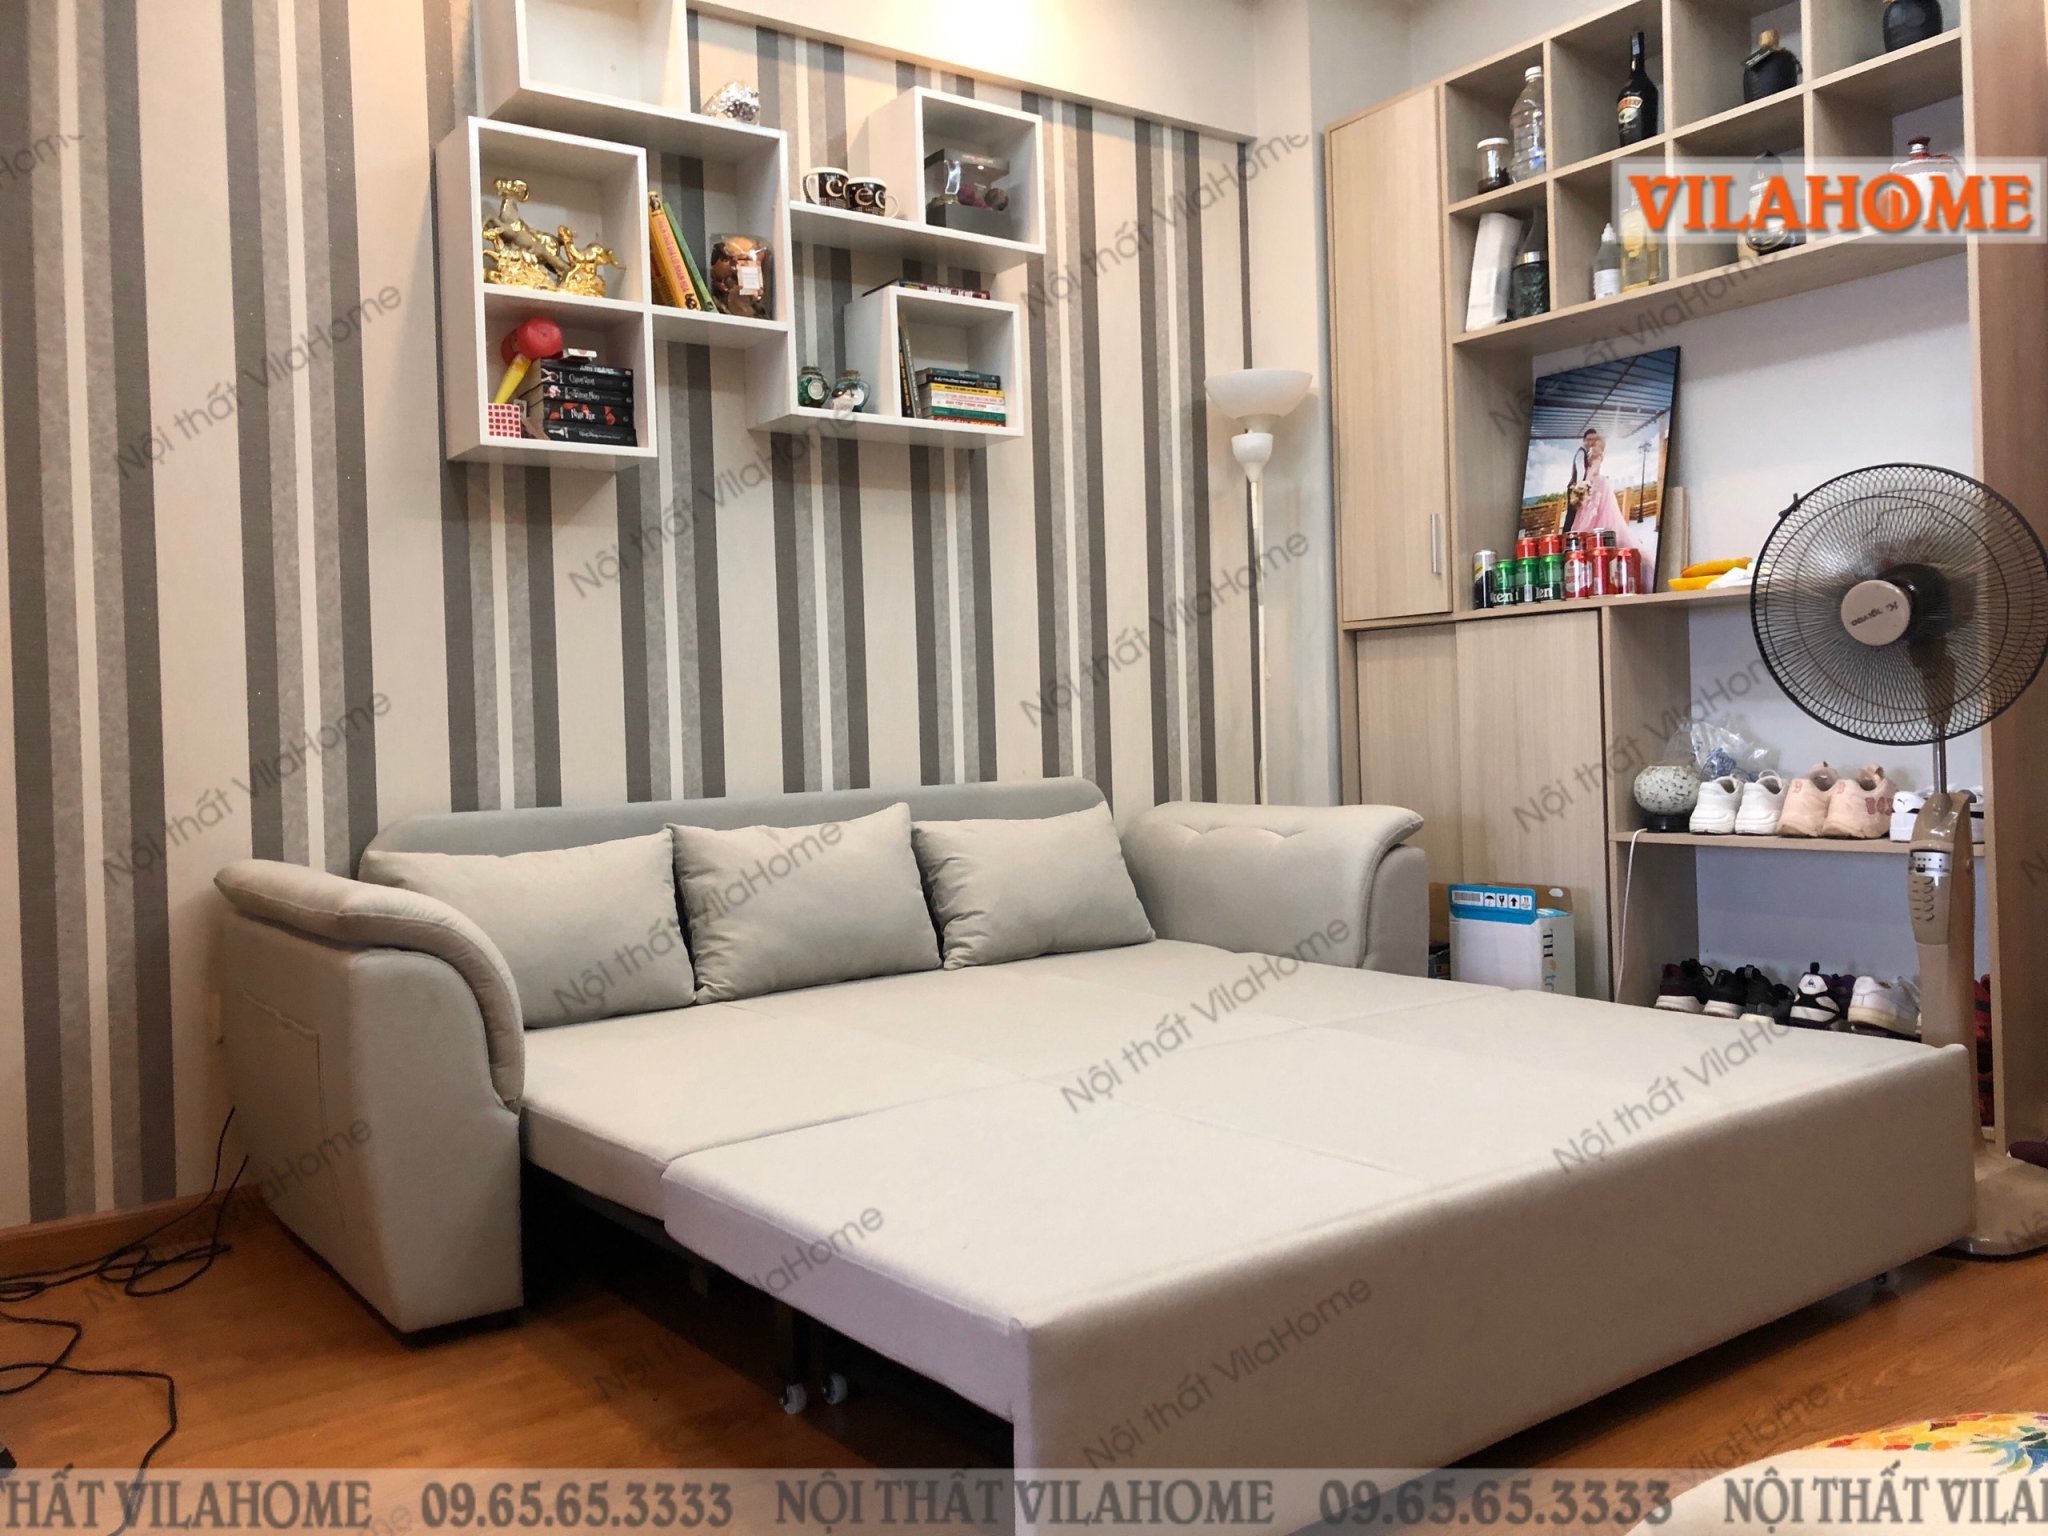 Ghế sofa giường đa năng ở Ninh Bình - TẶNG QUÀ trị giá 7,8 triệu